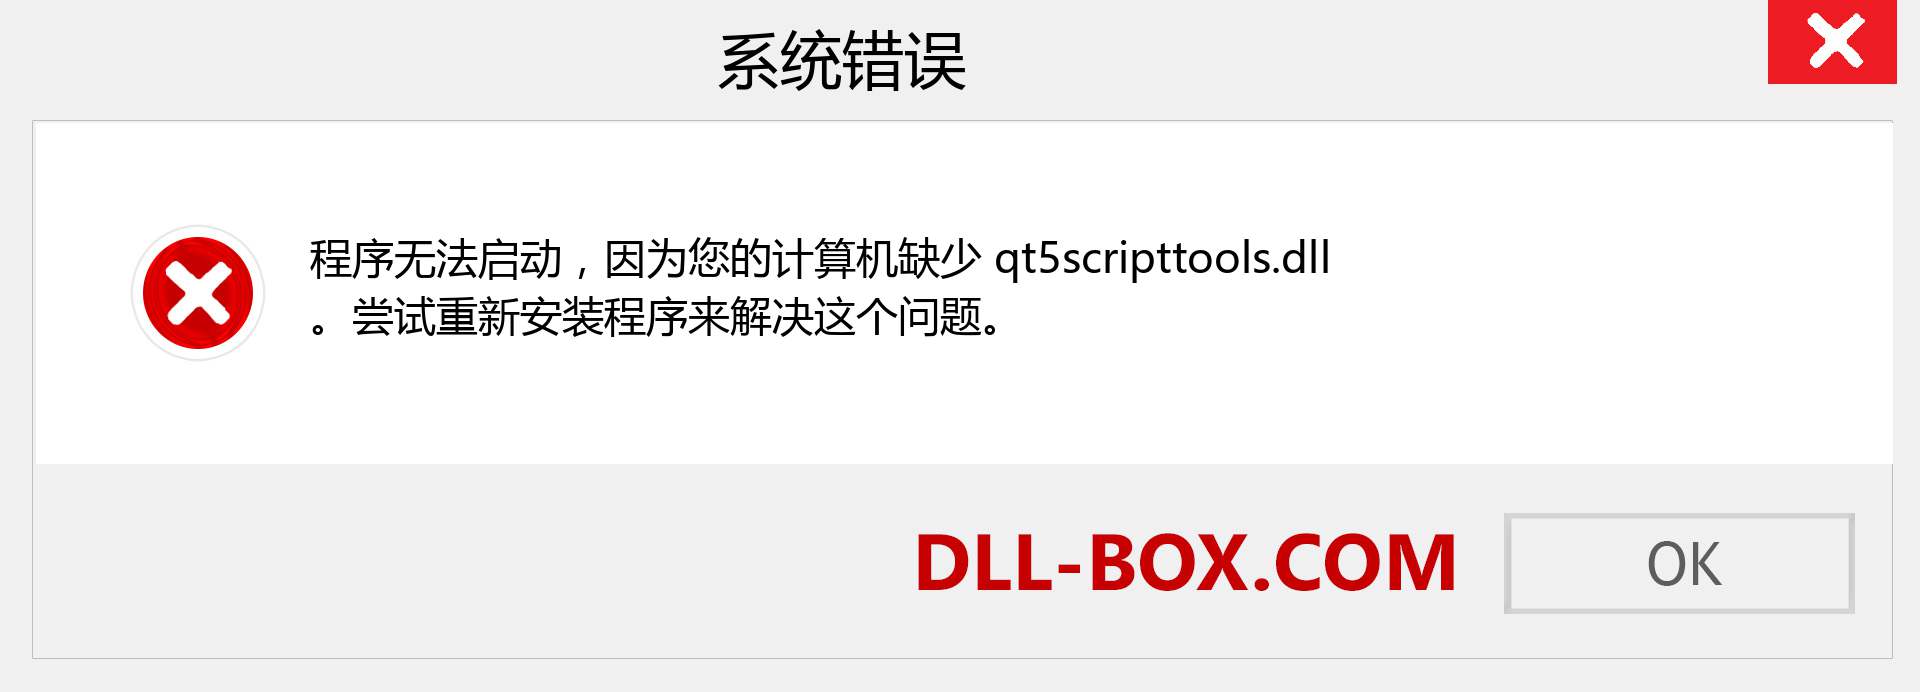 qt5scripttools.dll 文件丢失？。 适用于 Windows 7、8、10 的下载 - 修复 Windows、照片、图像上的 qt5scripttools dll 丢失错误